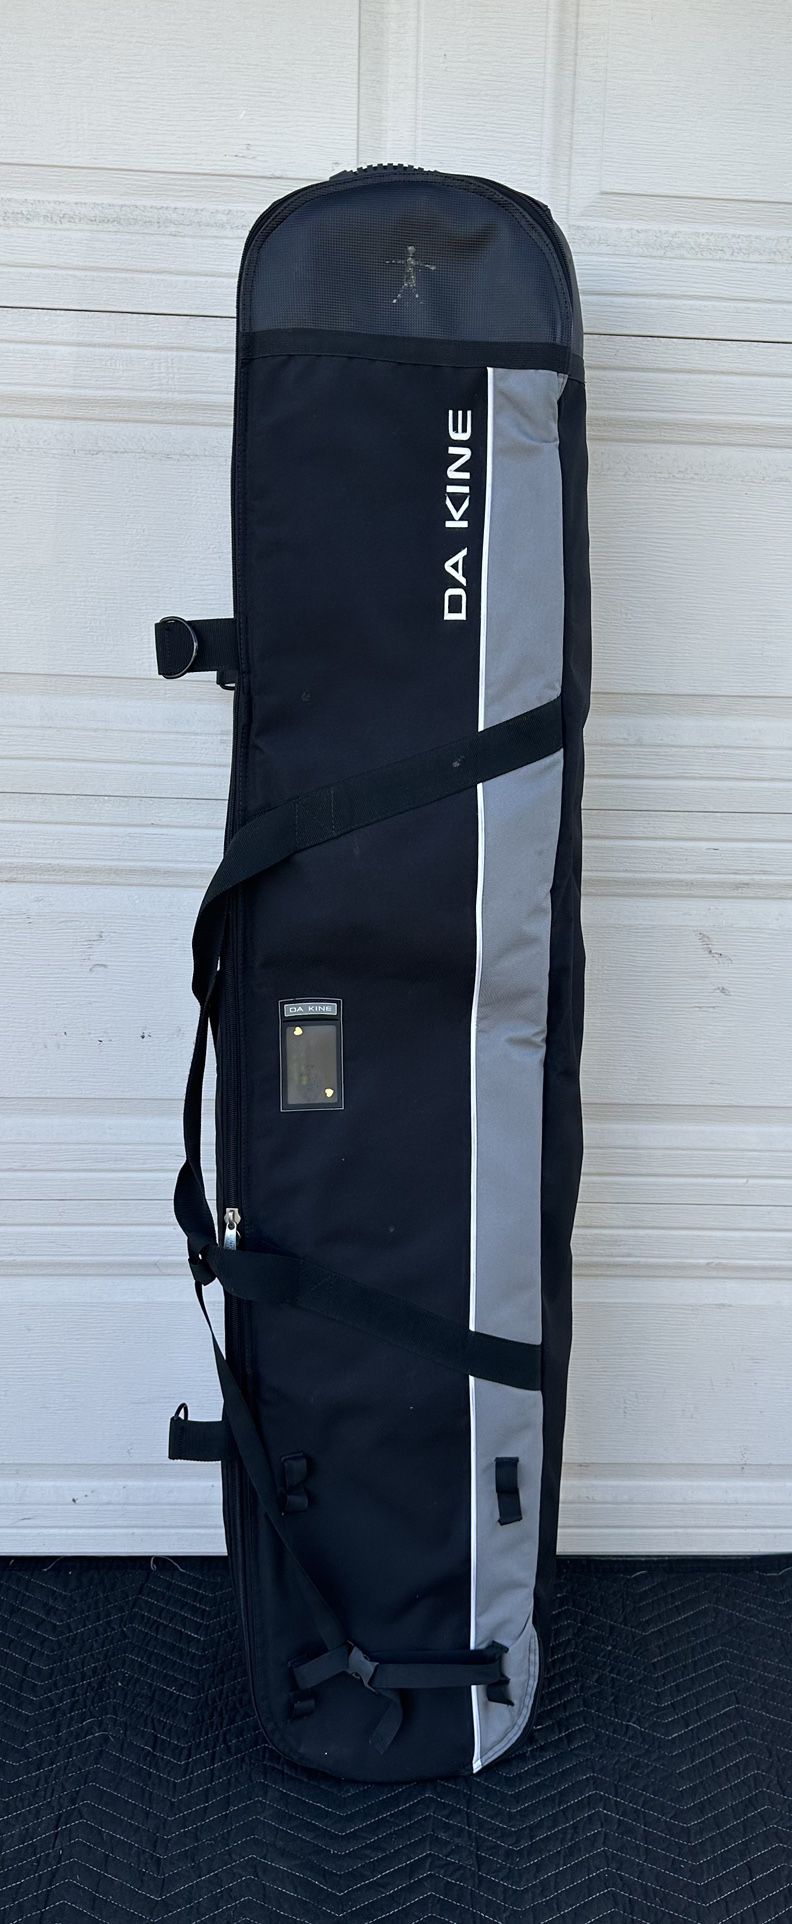 Da Kine Snowboard Bag 175cm